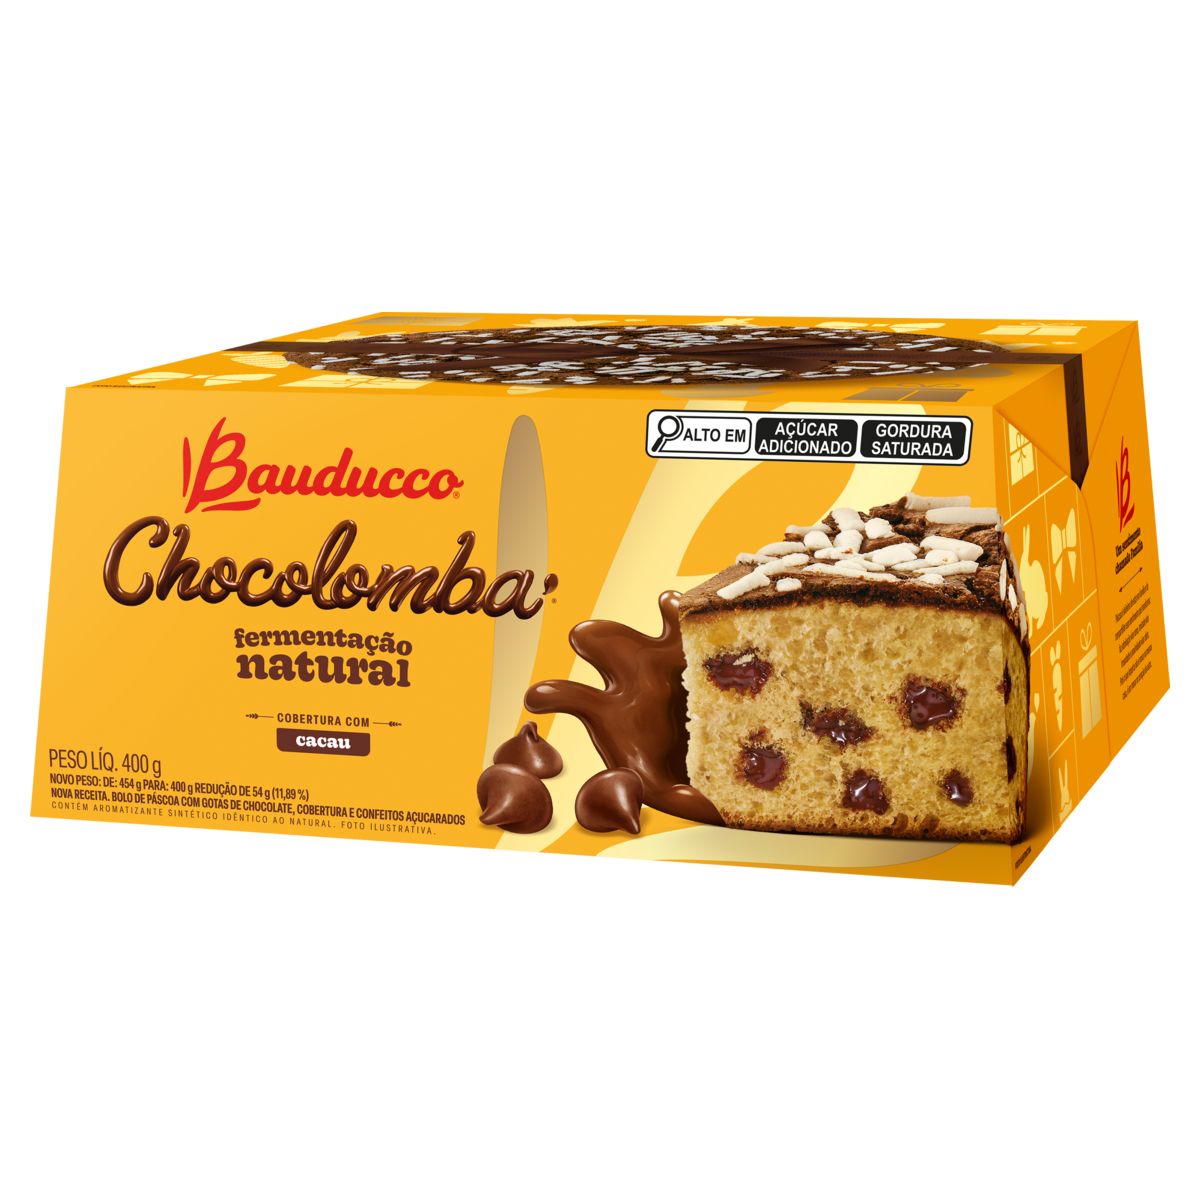 Chocolomba Bauducco Gotas de Chocolate Caixa 400g